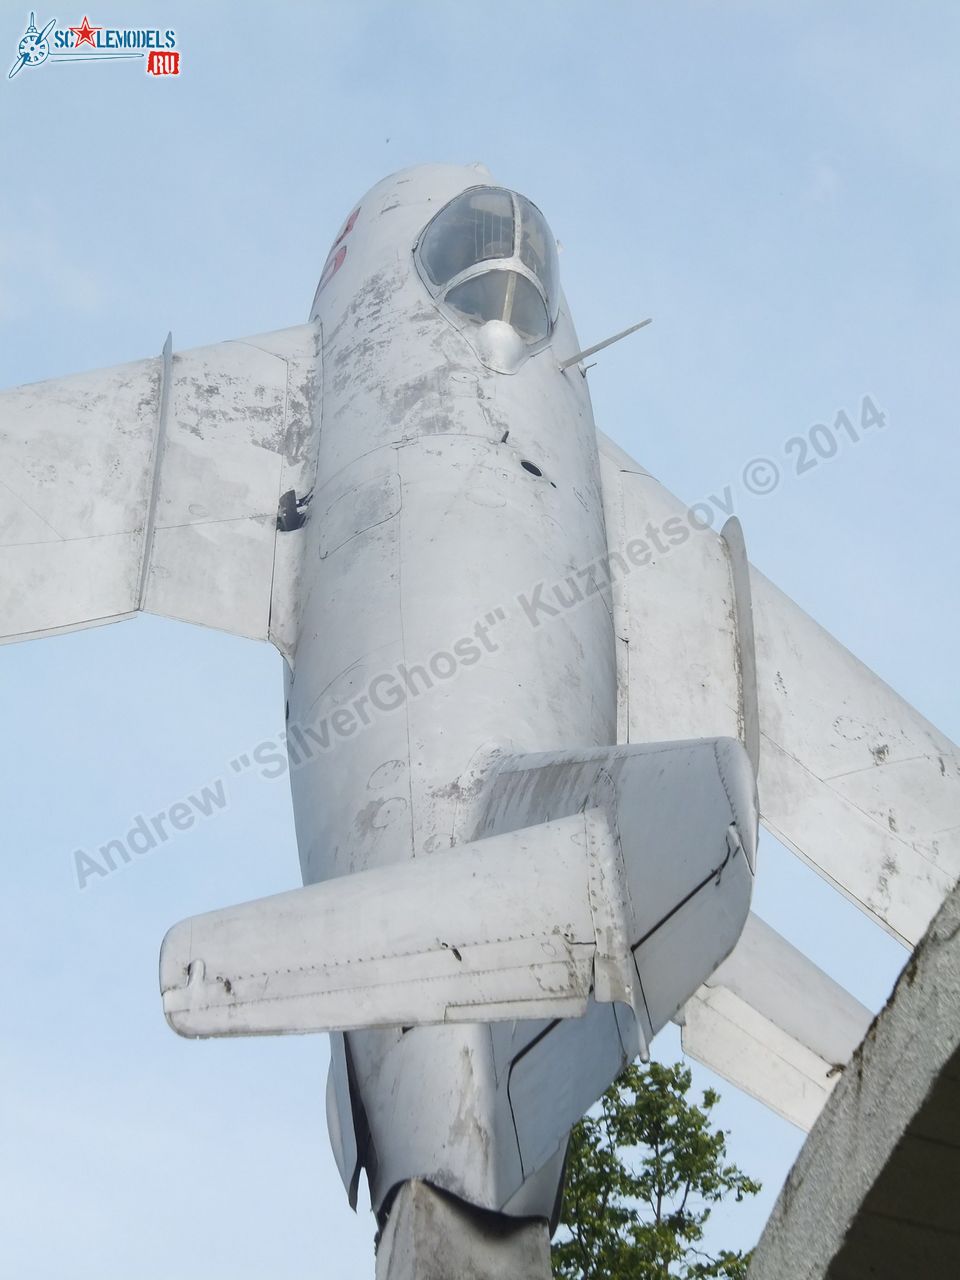 MiG-17_0012.jpg